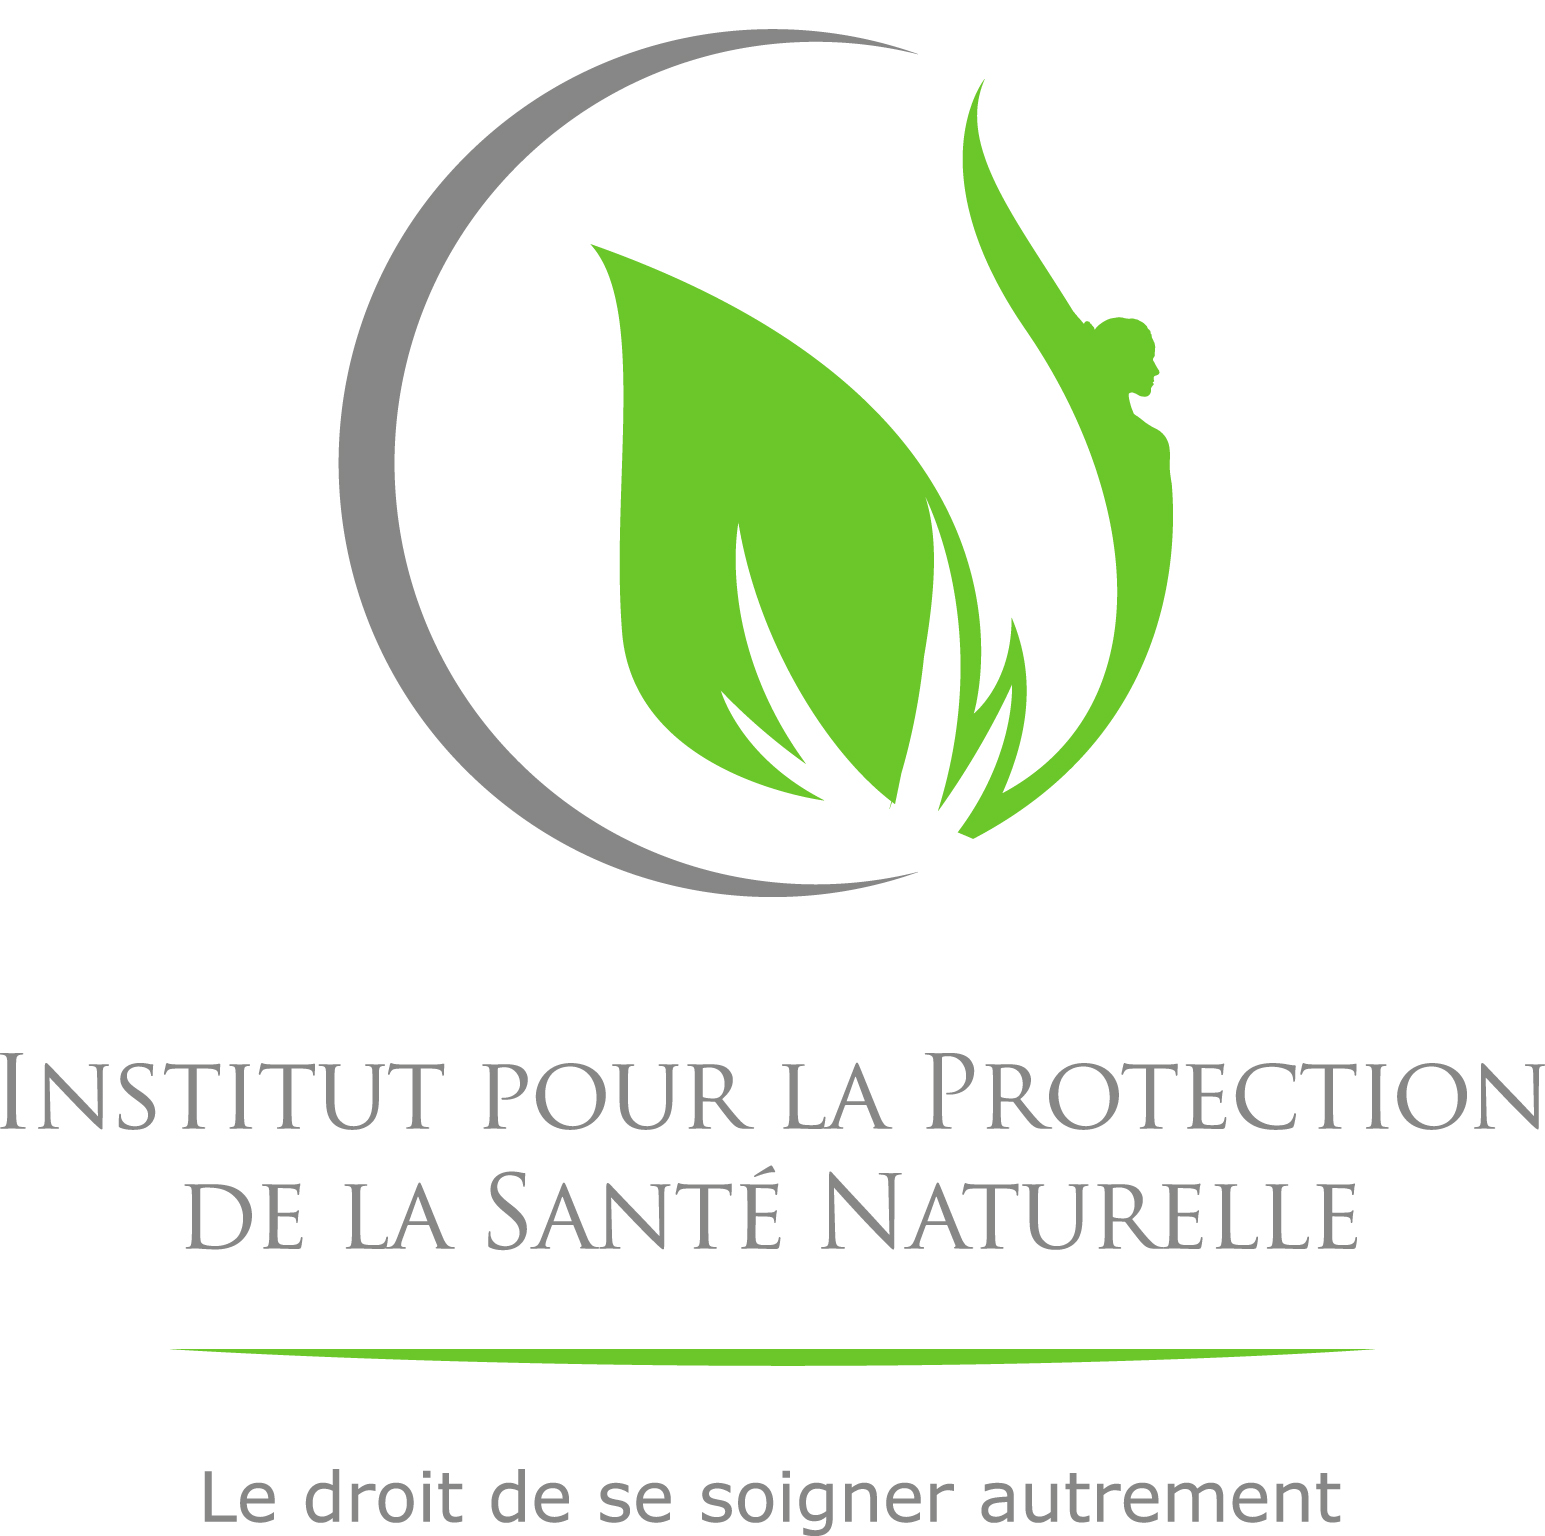 IPSN – Institut pour la Protection de la Santé Naturelle